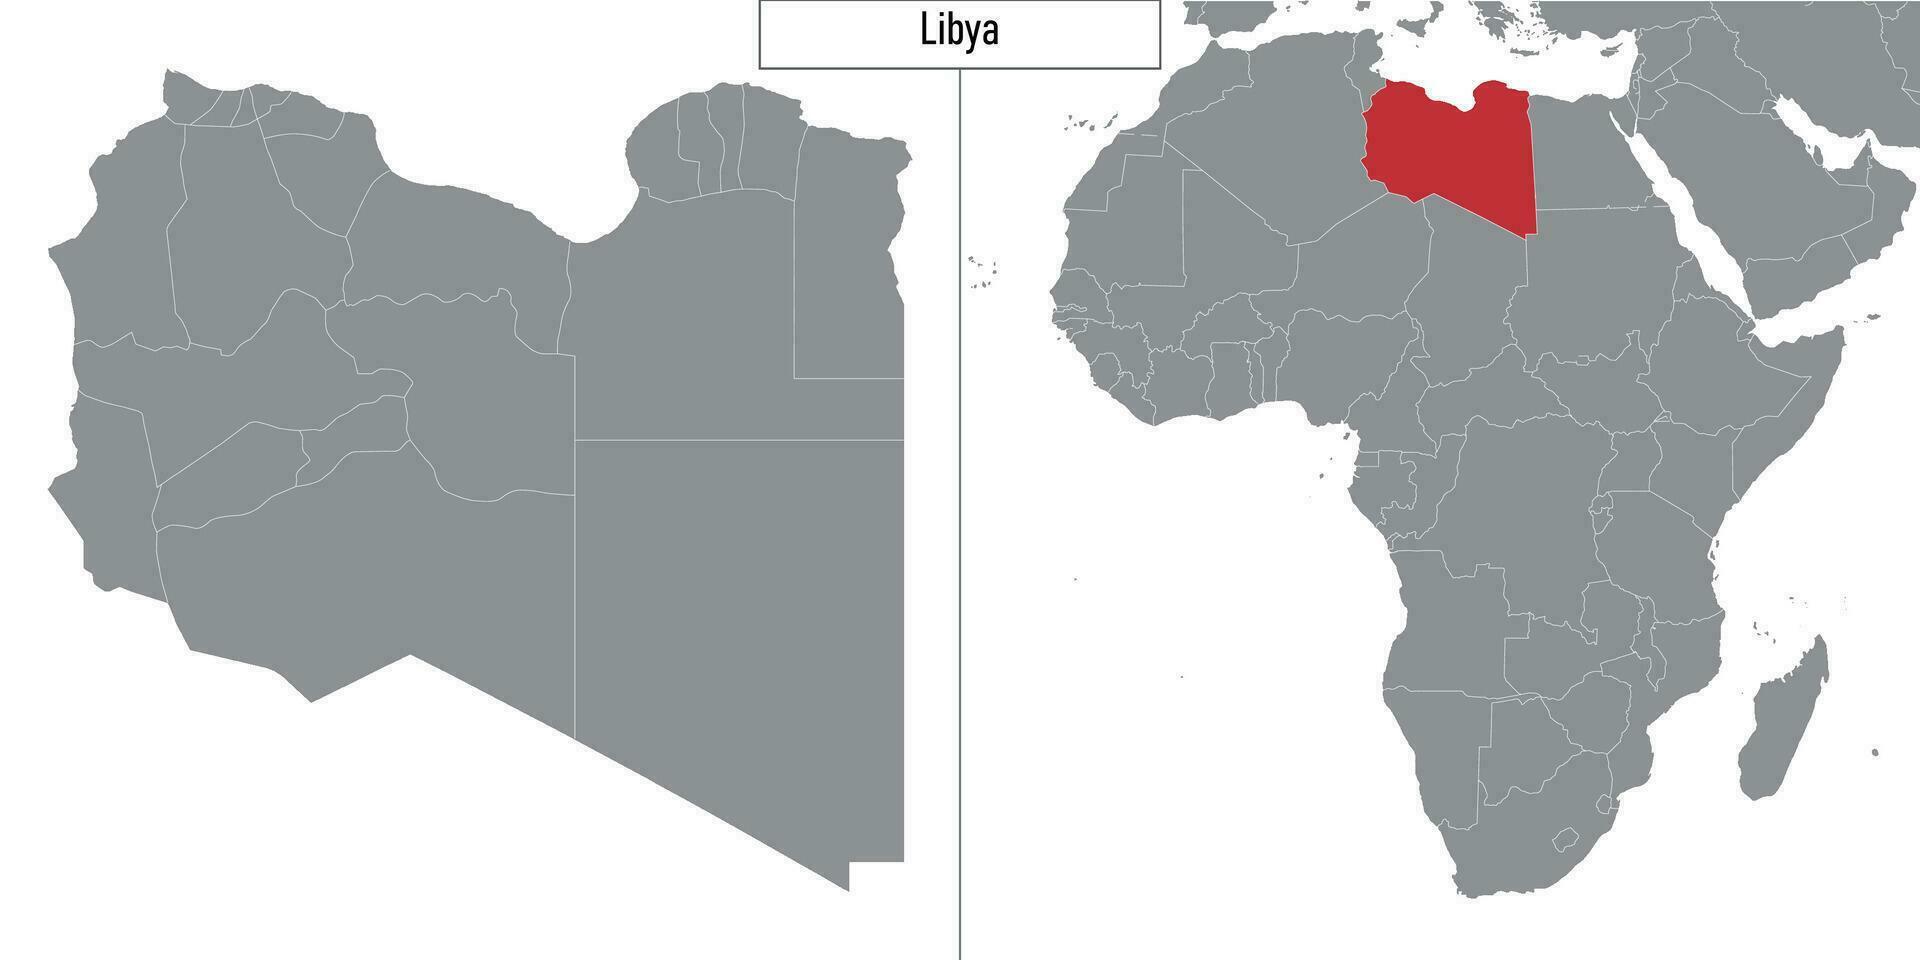 Karte von Libyen und Ort auf Afrika Karte vektor